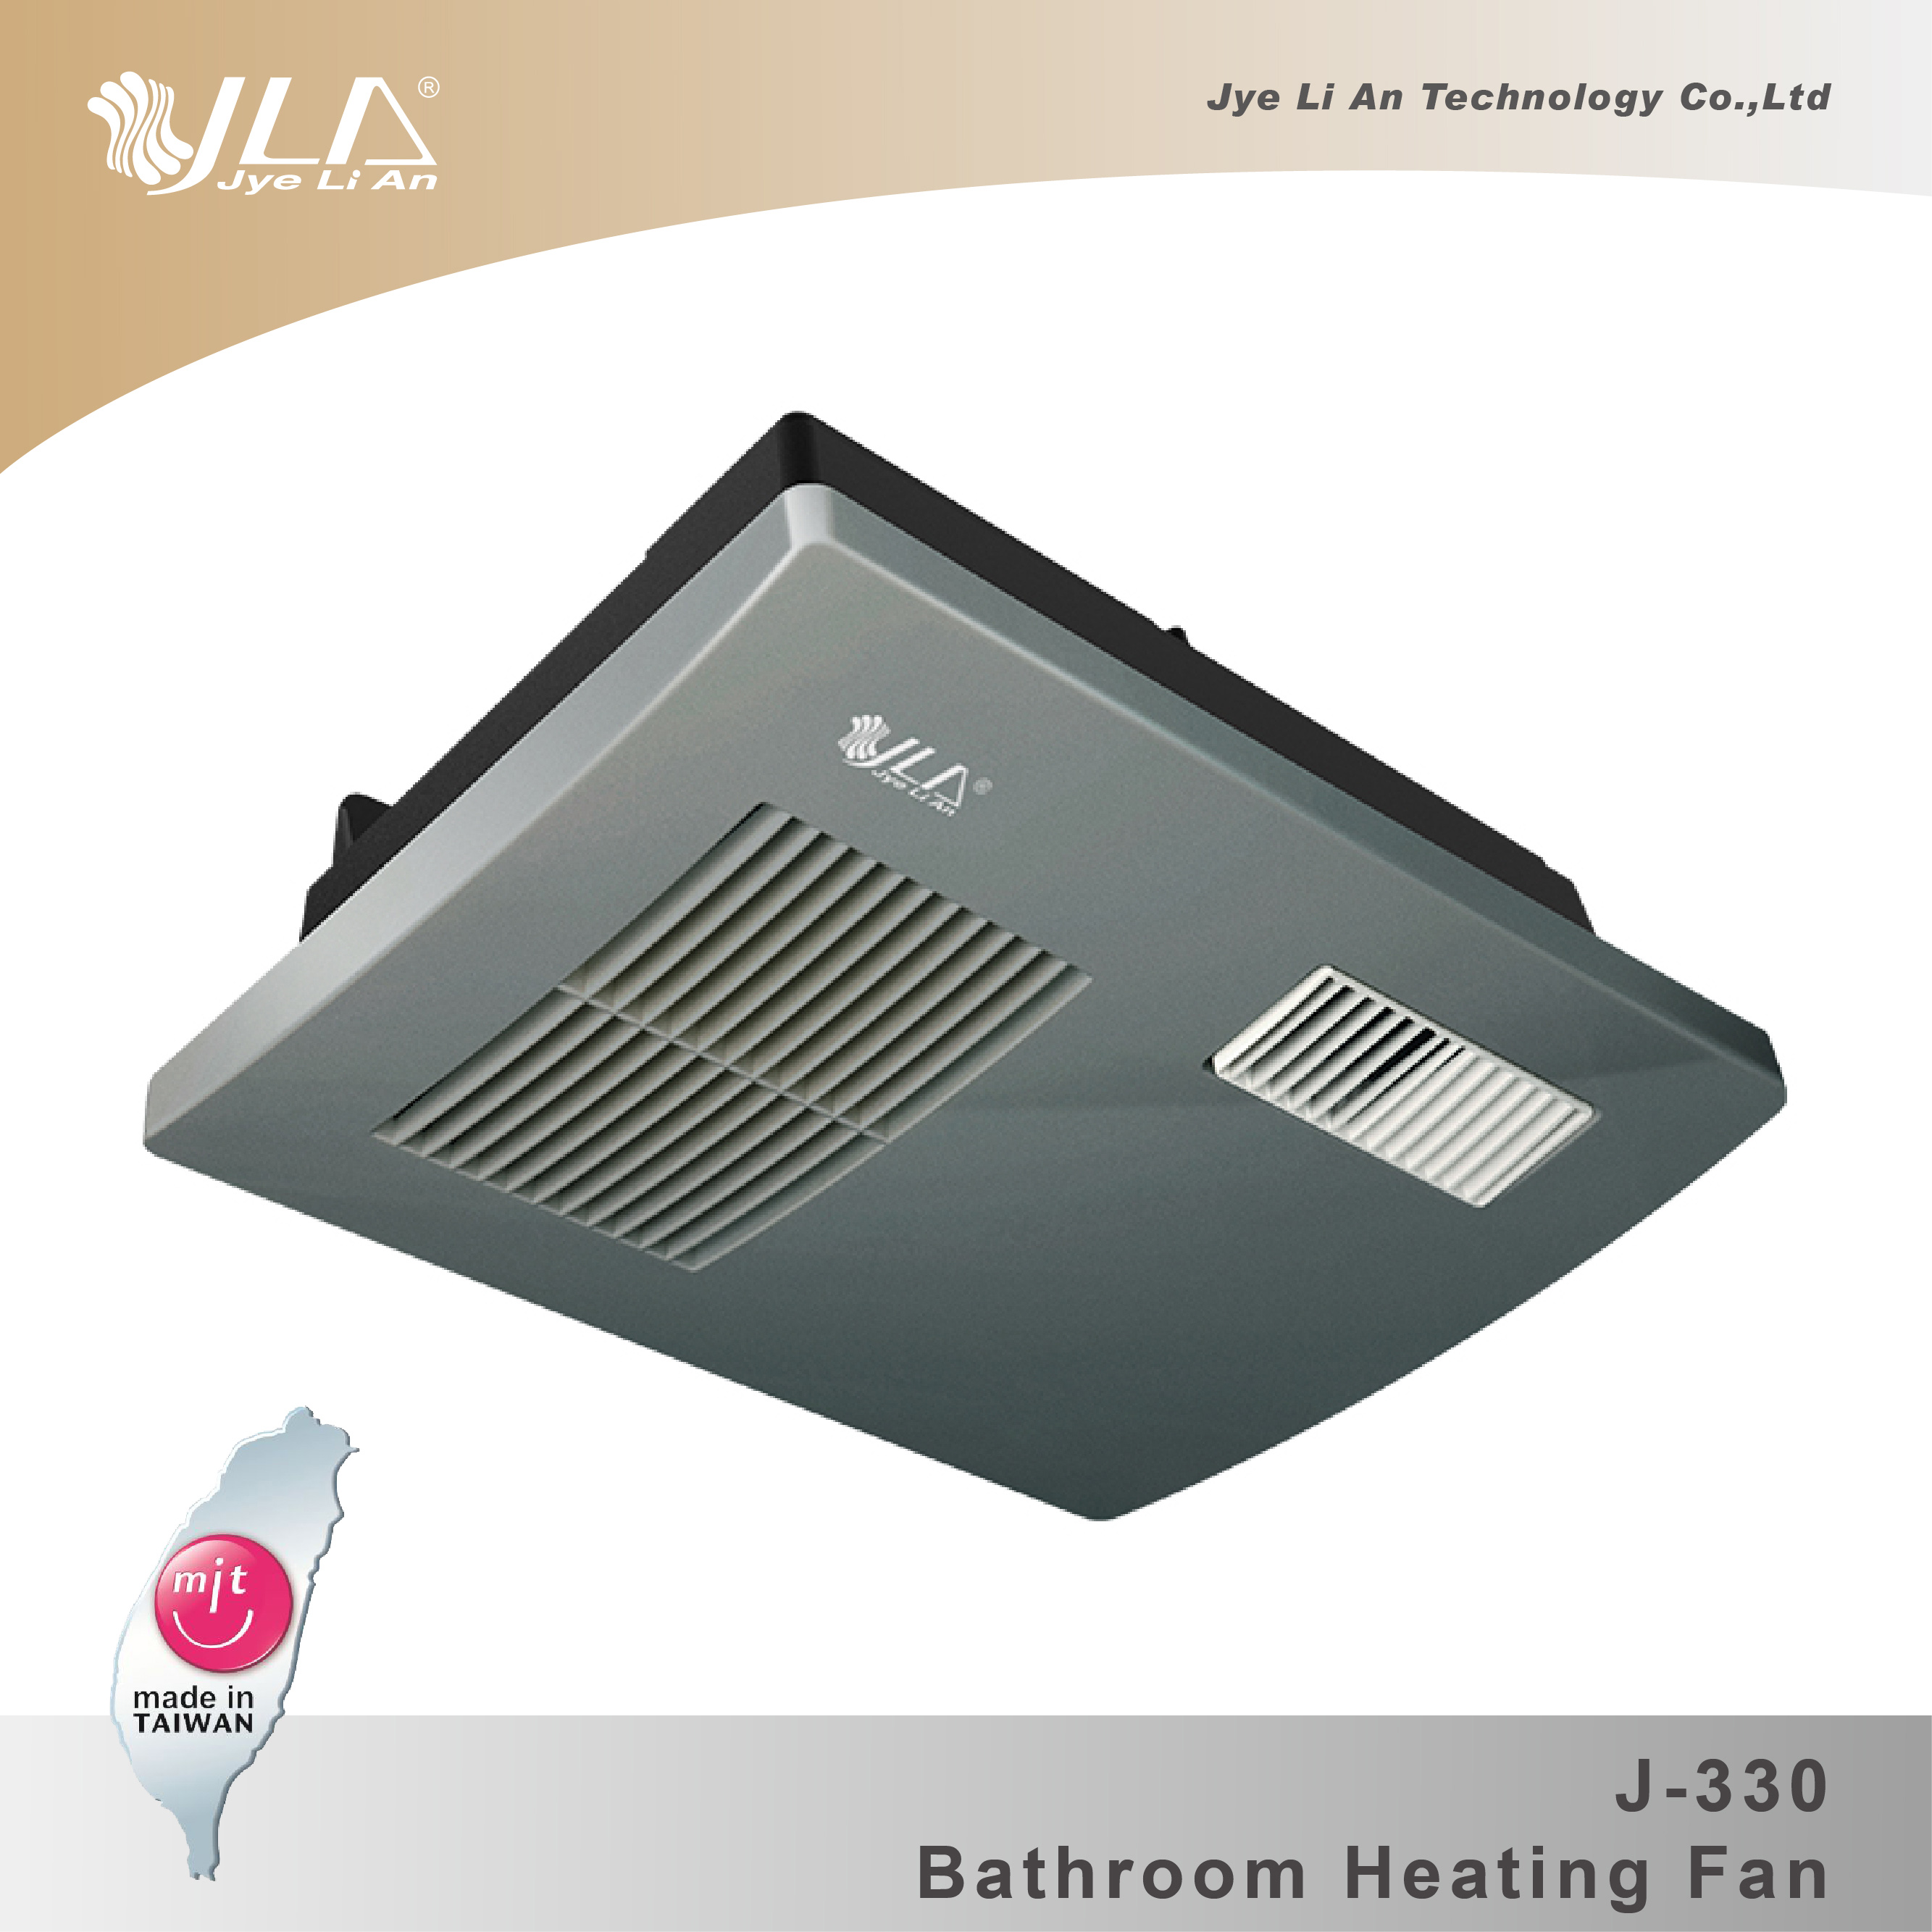 Bathroom Heating Fan Jye Li An Technology Co Ltd